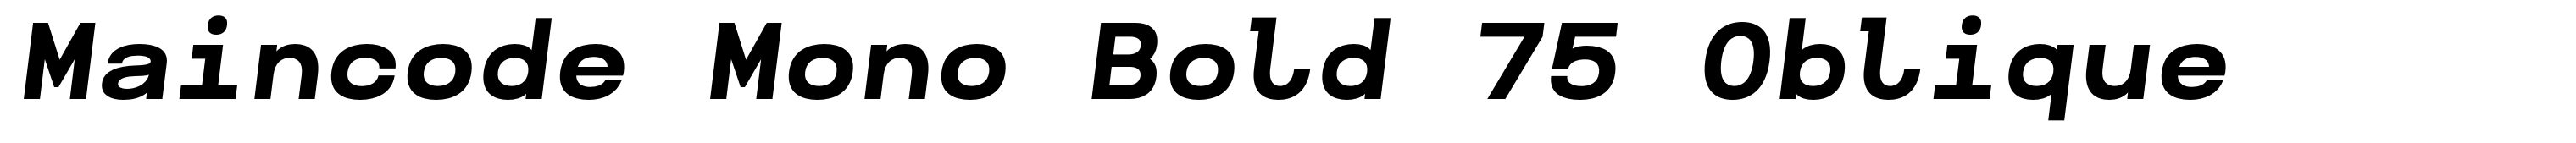 Maincode Mono Bold 75 Oblique